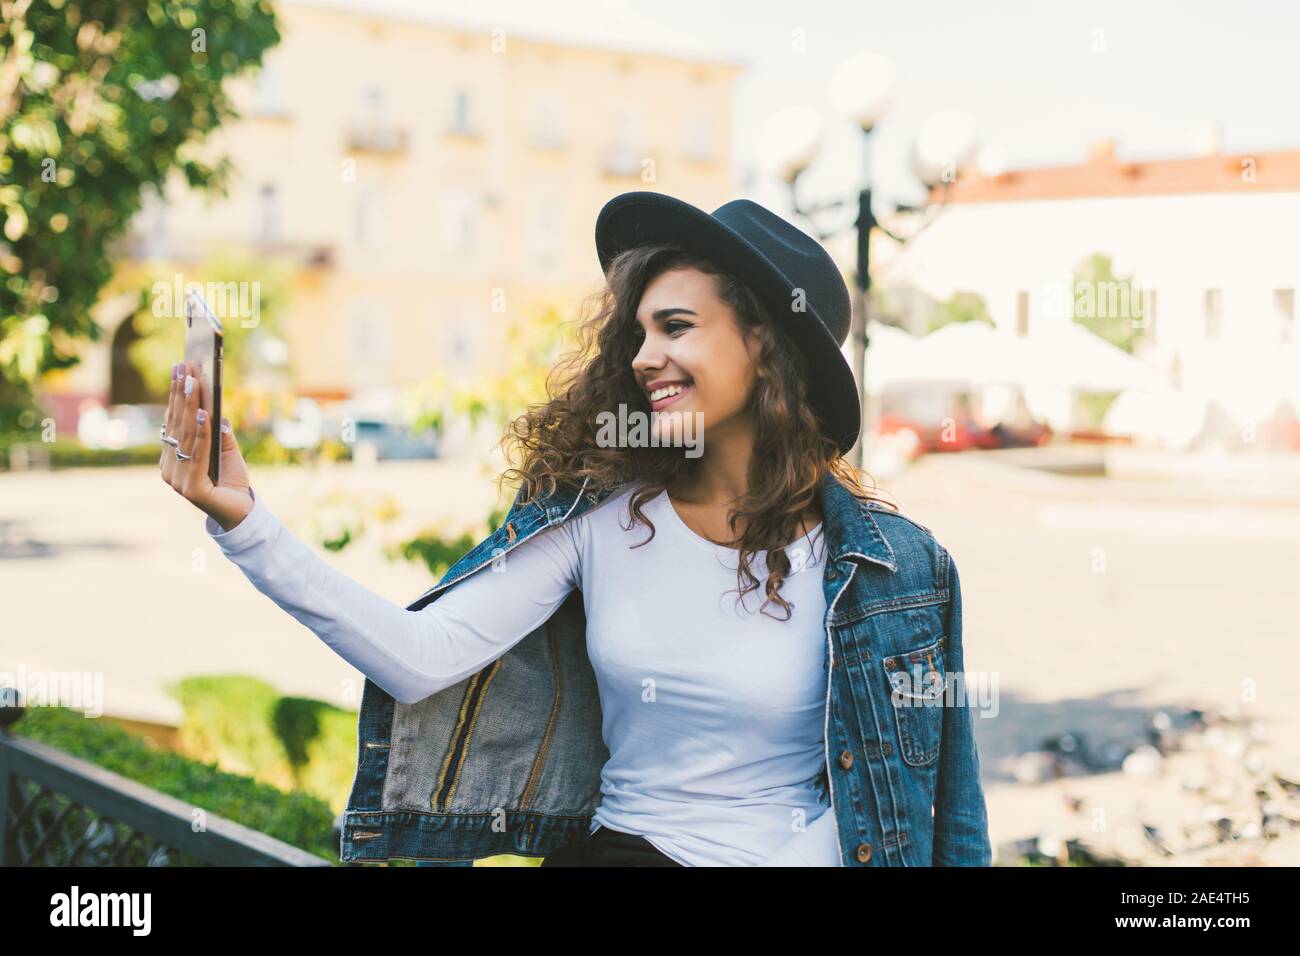 Jeune fille prendre des selfies mains avec téléphone sur summer city street. La vie urbaine concept. Banque D'Images